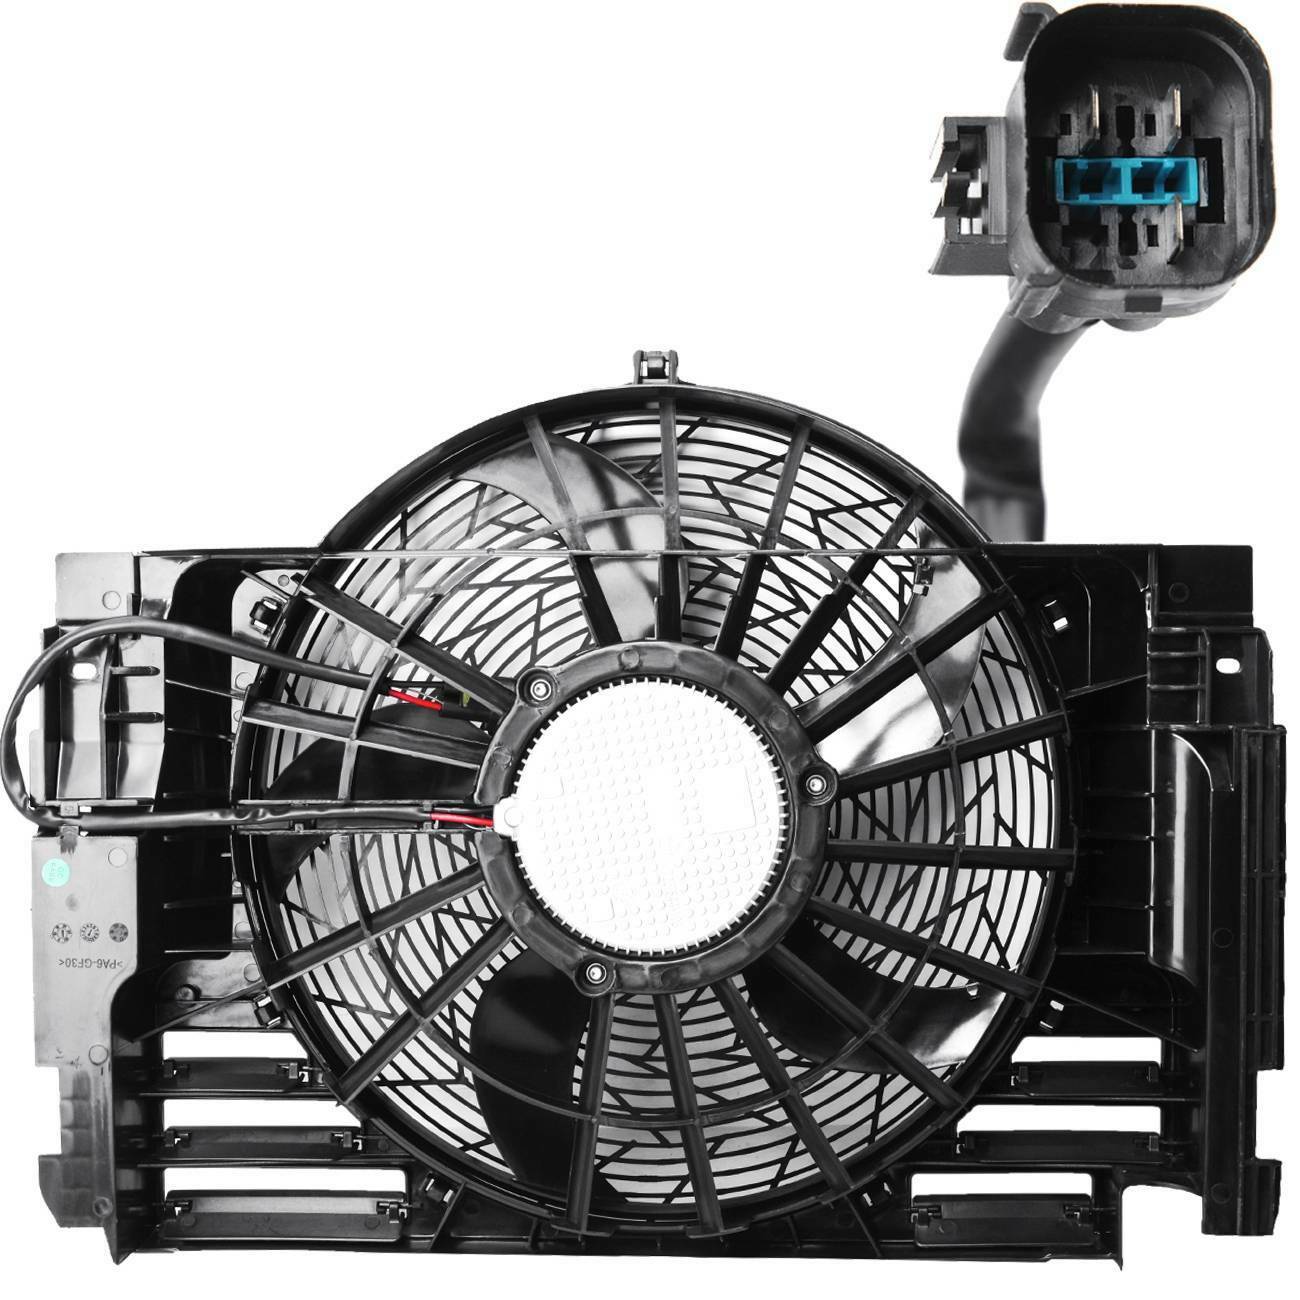 Radiator Cooling Fan 350W for BMW X5 E53 3.0L 4.4L 4.6L 4.8L 64546921381 German Made